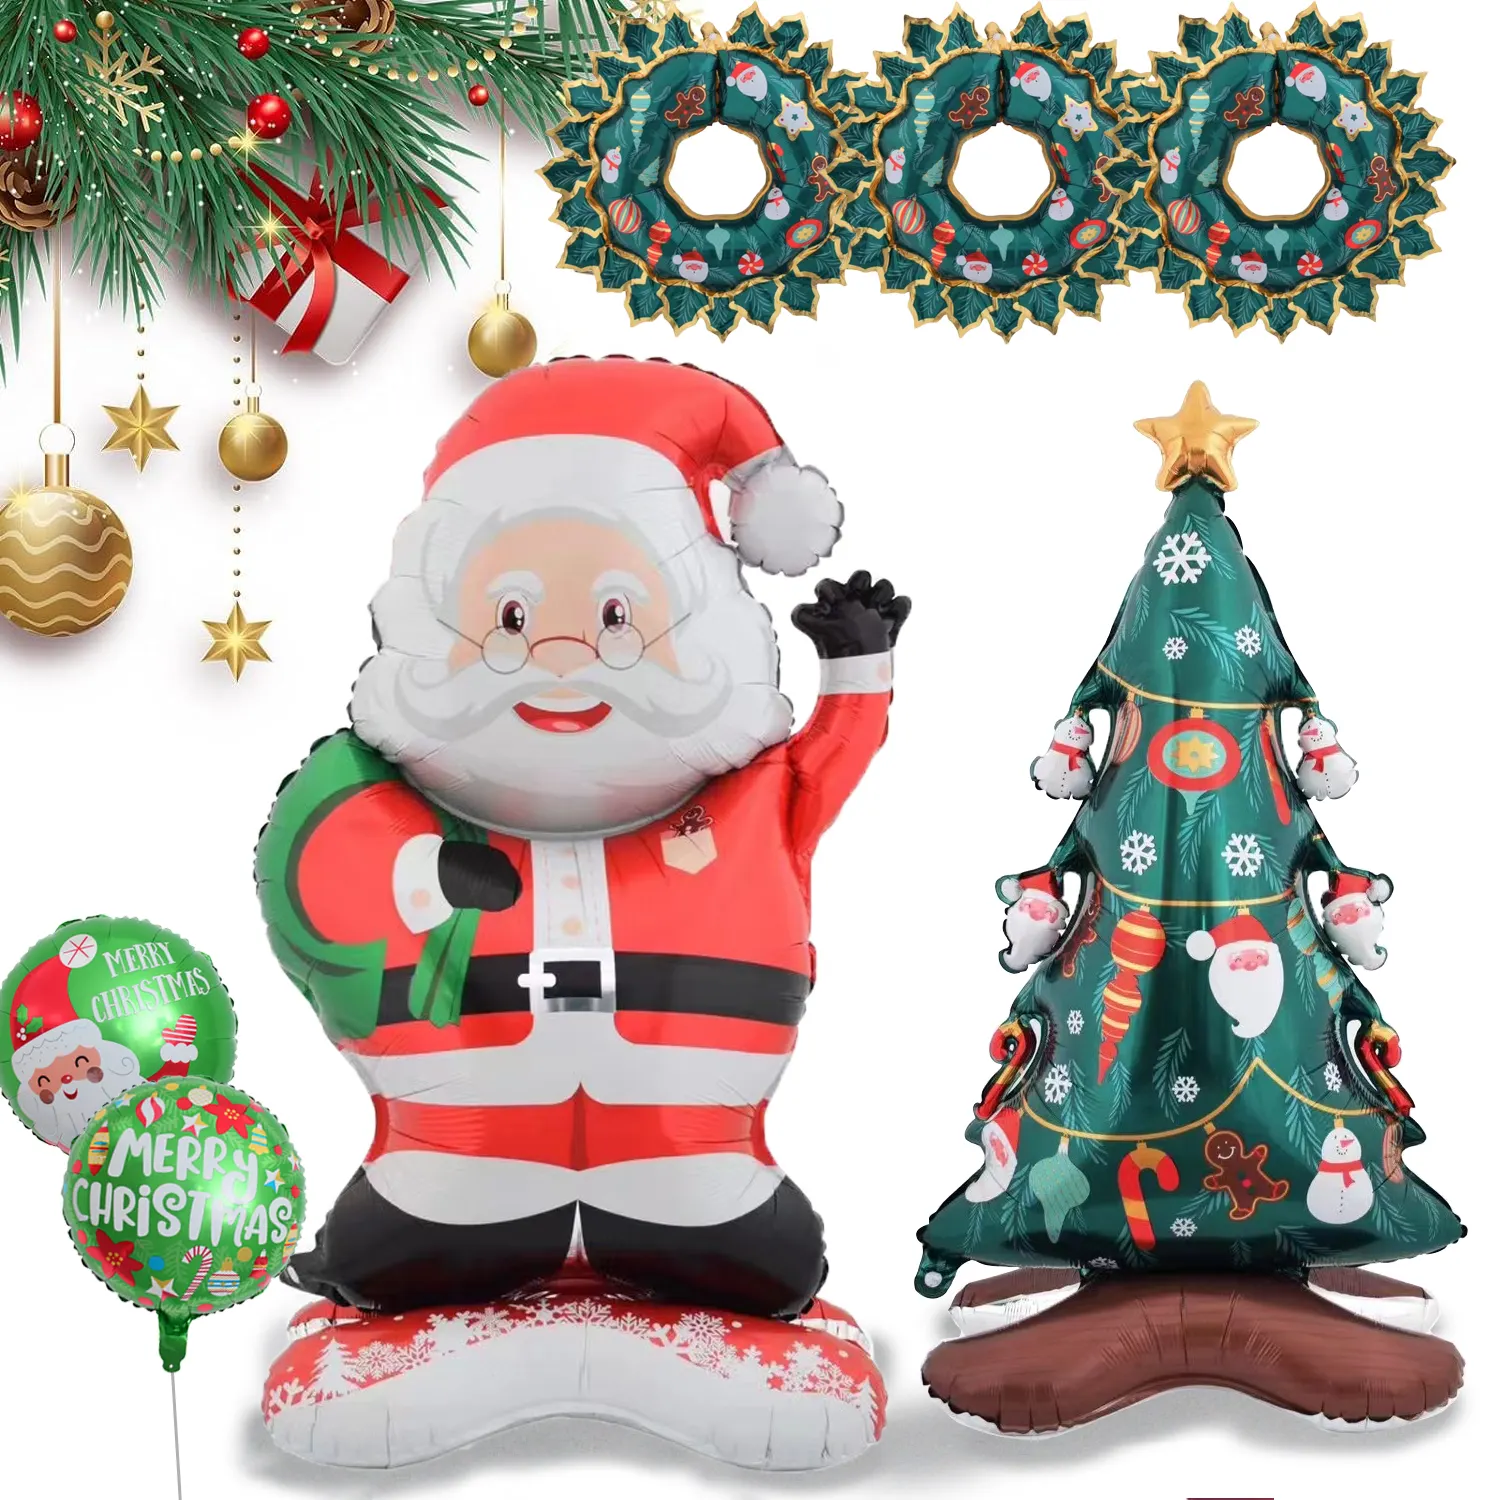 Globos de Navidad Bolsa de Papá Noel de pie con corona de Navidad Globos de aluminio de árbol de Navidad para decoraciones Suministros de fiesta de cumpleaños